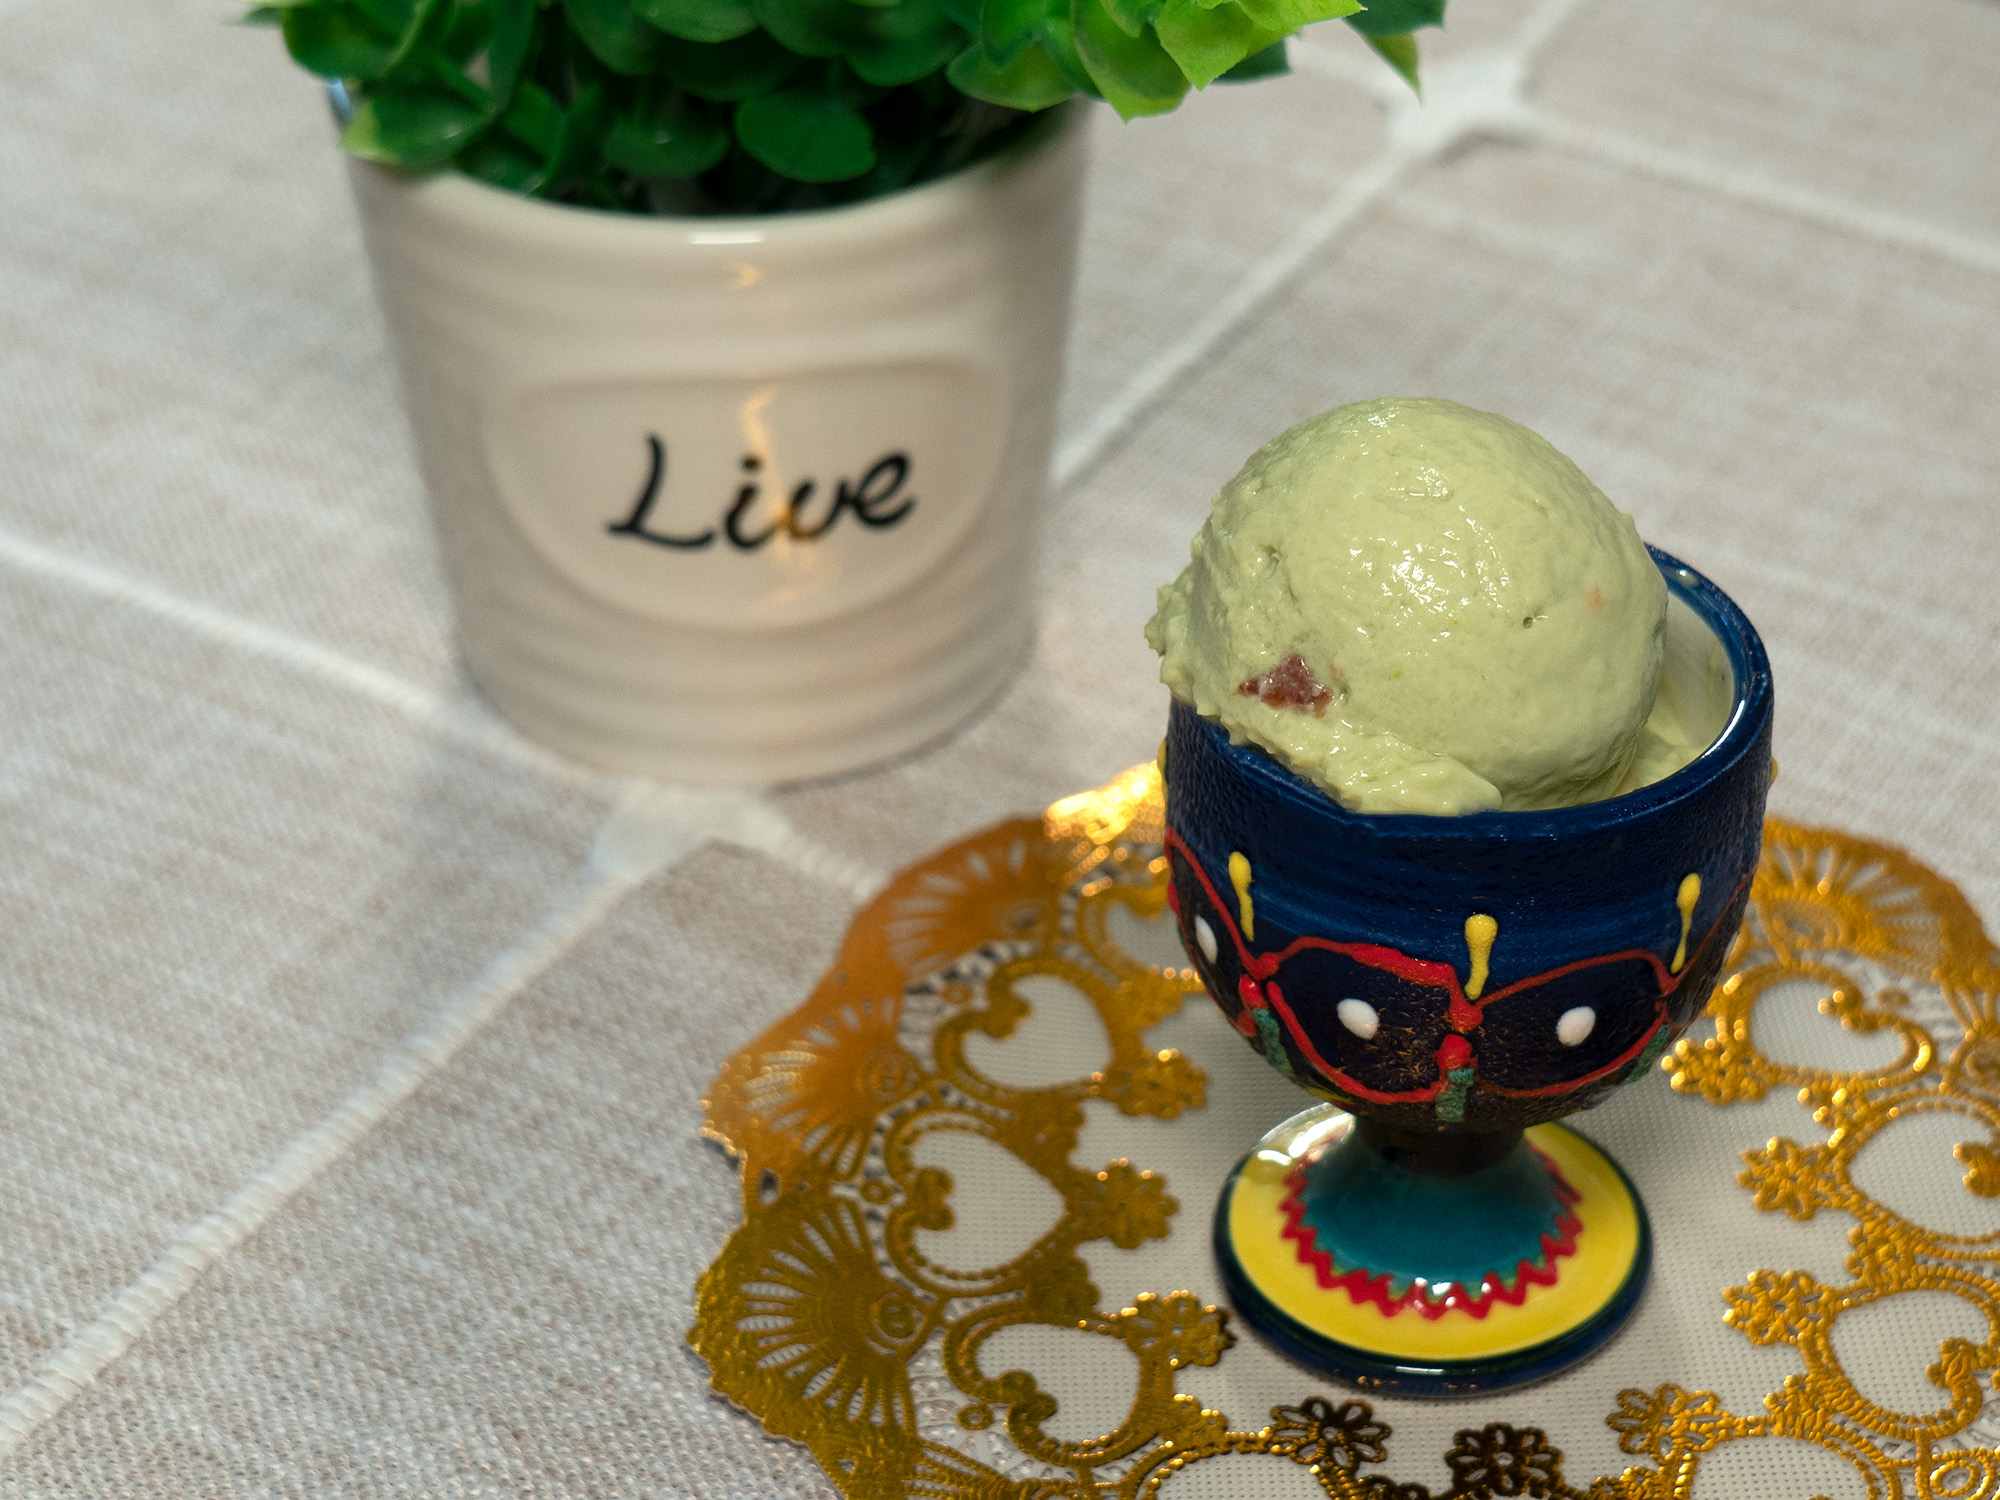 灰色大理石桌上美味的开心果冰淇淋 库存图片. 图片 包括有 猕猴桃, 绿色, 勺子, 可口, 对象, 快餐 - 158499061